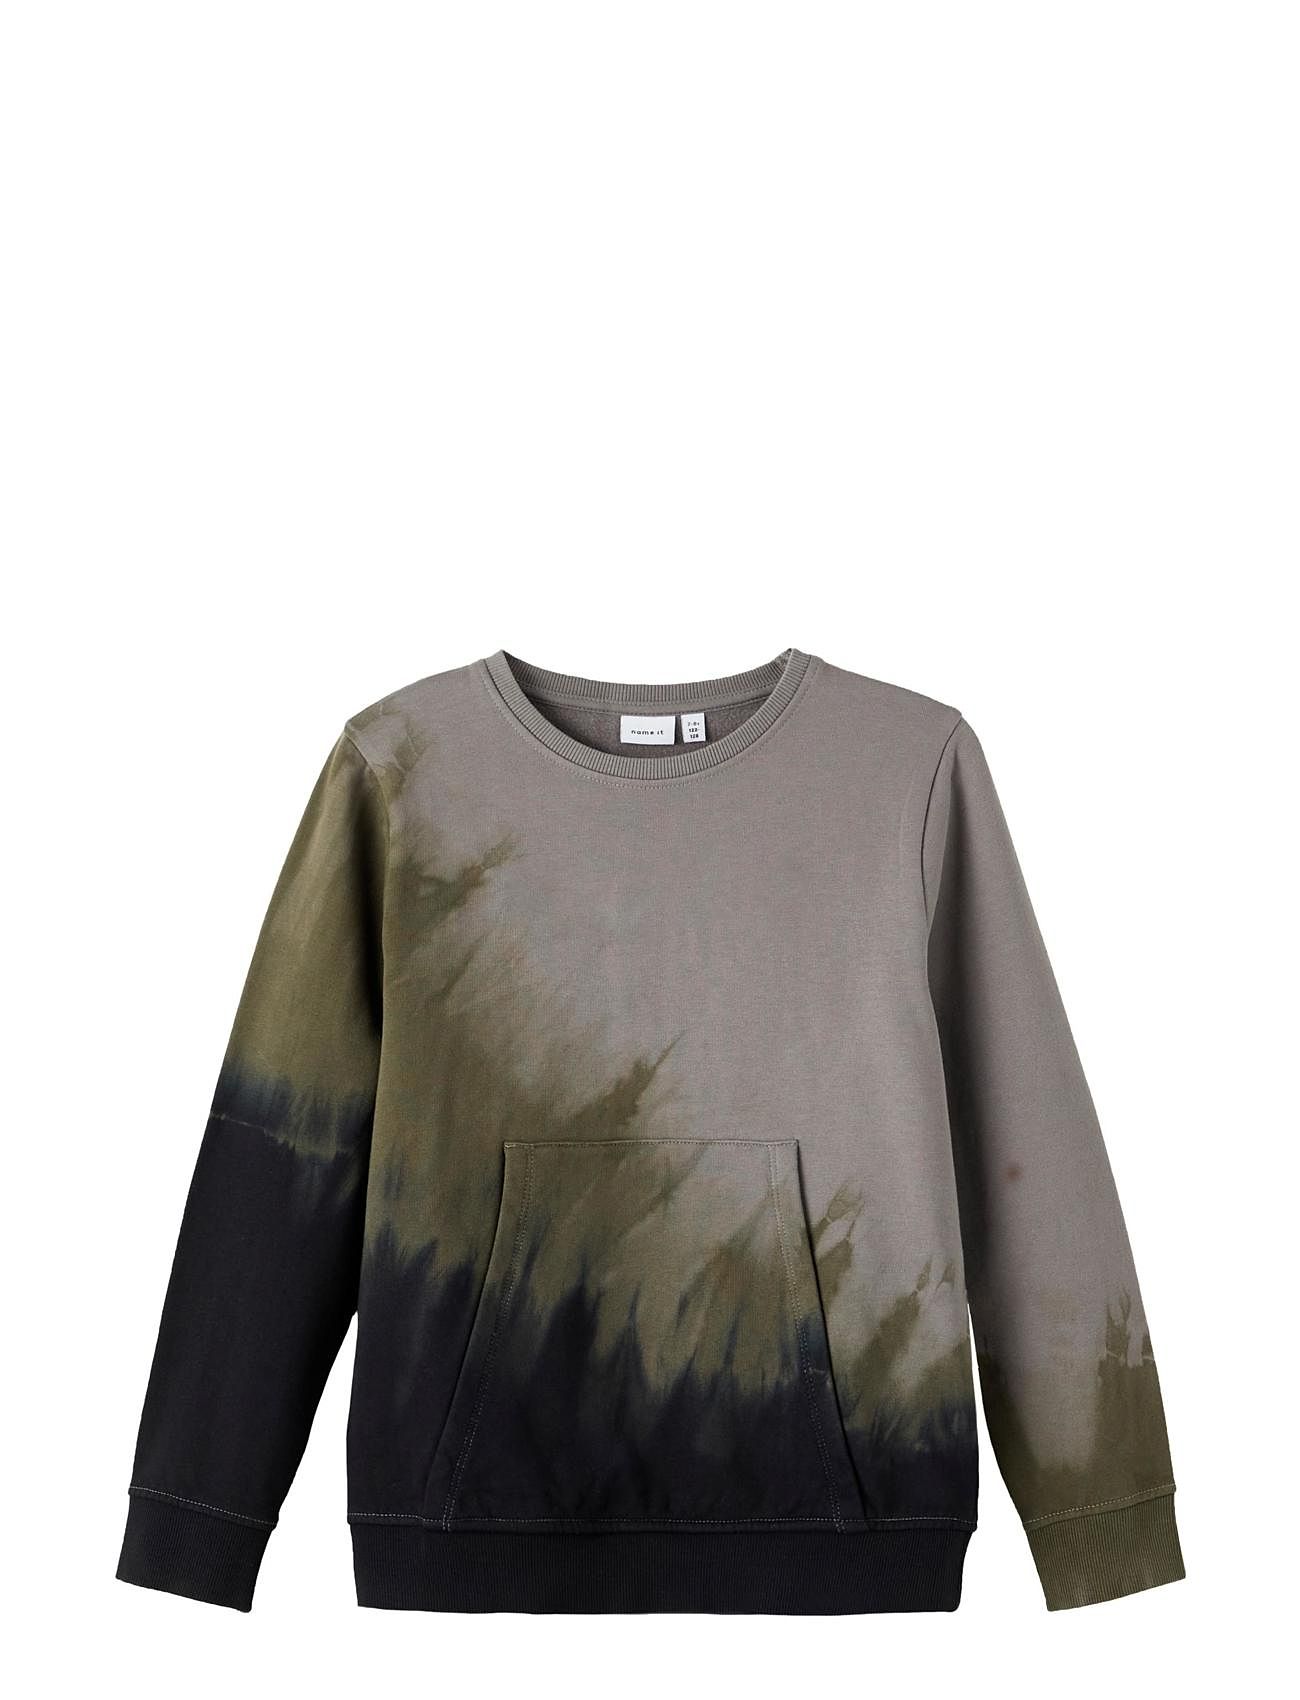 Nkmneskin Ls Sweat Bru Tops Sweatshirts & Hoodies Sweatshirts Multi/patterned Name It